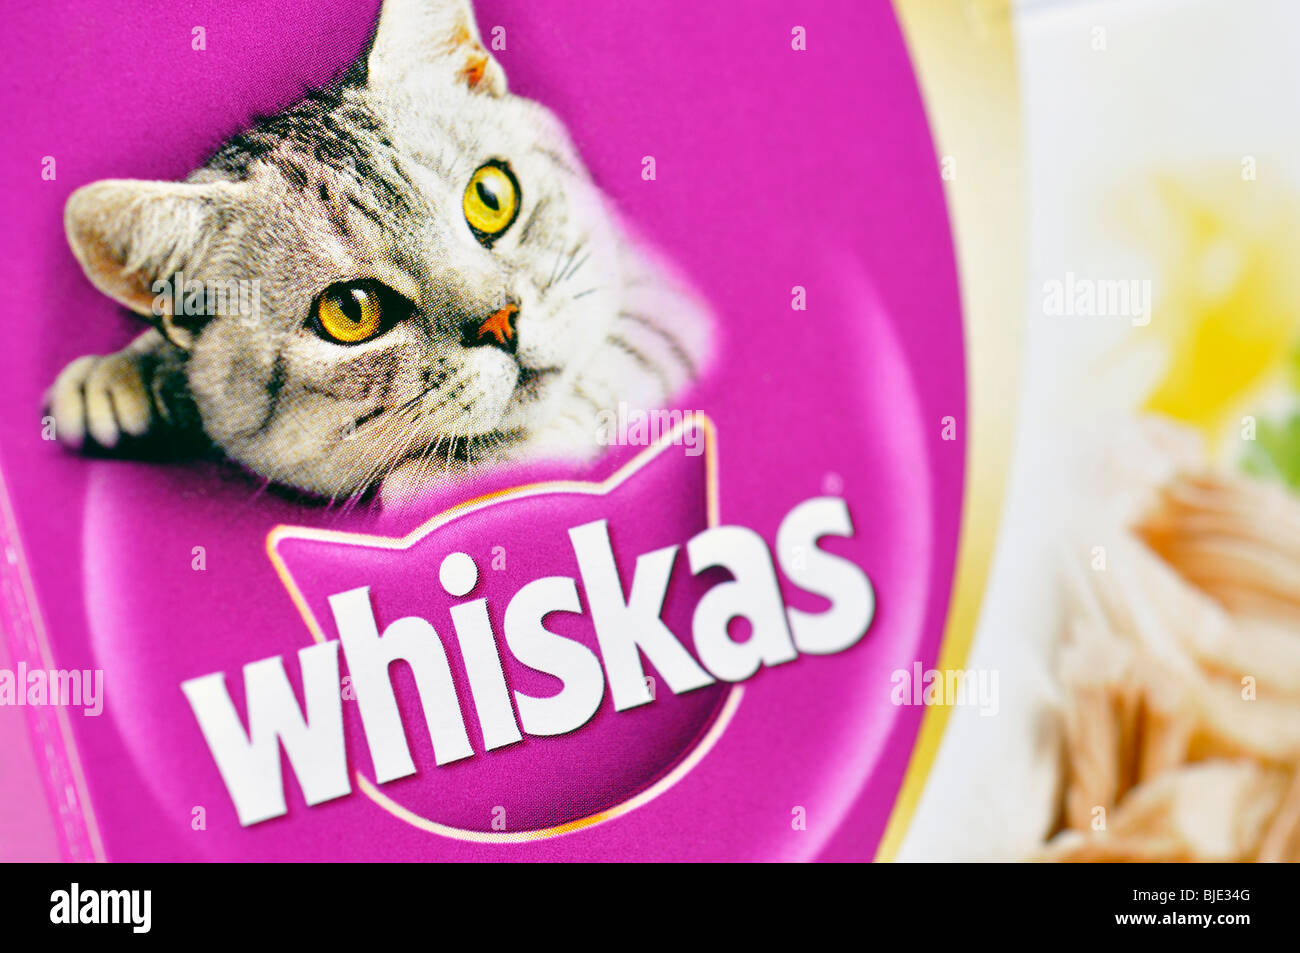 Whiskas immagini e fotografie stock ad alta risoluzione - Alamy